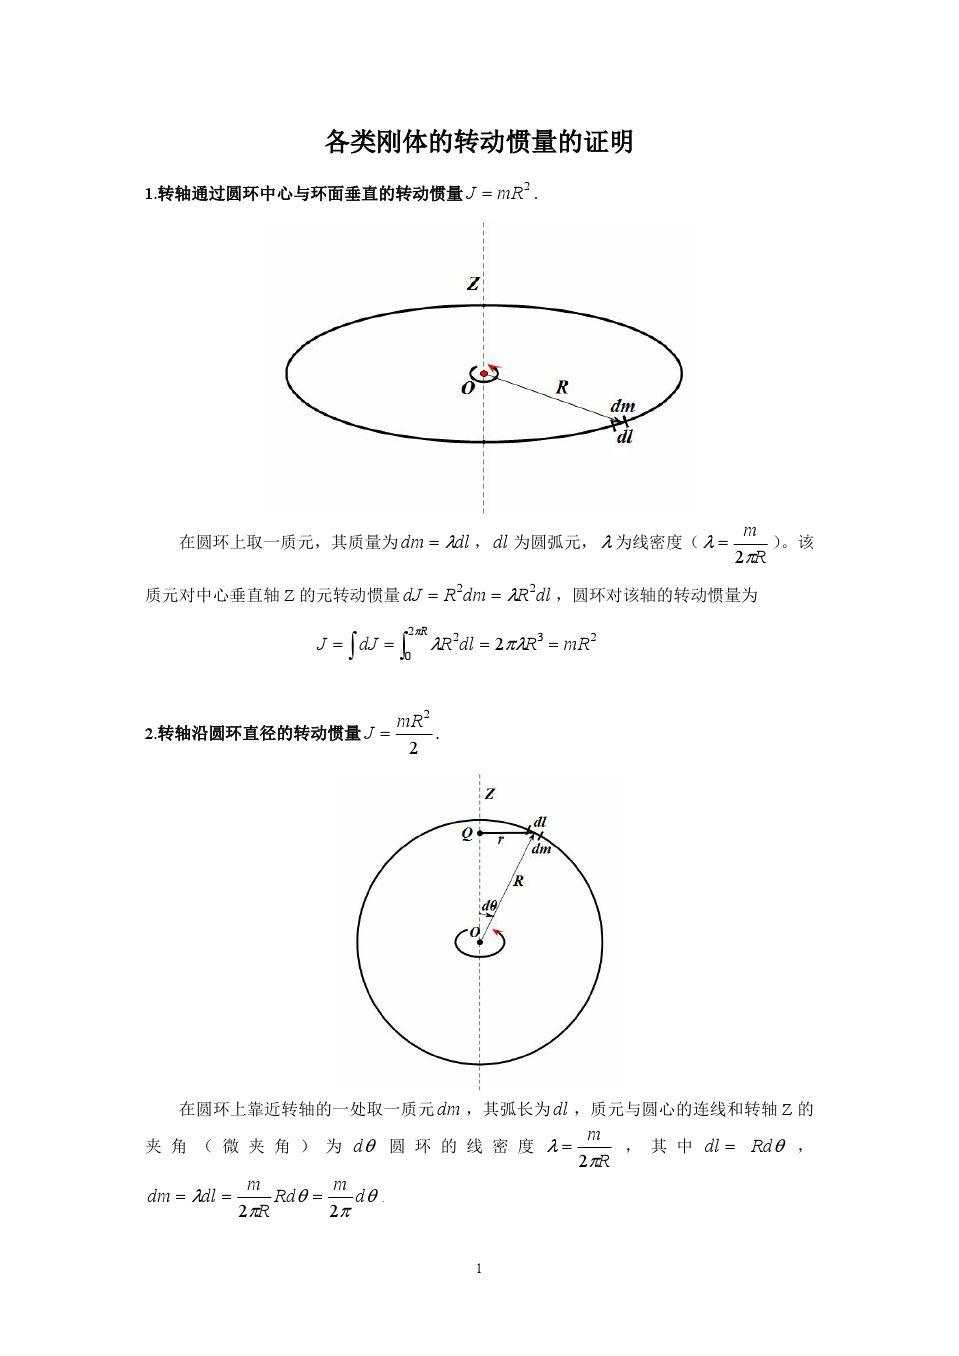 如何推导常用刚体的转动惯量 (圆环 圆盘 球体